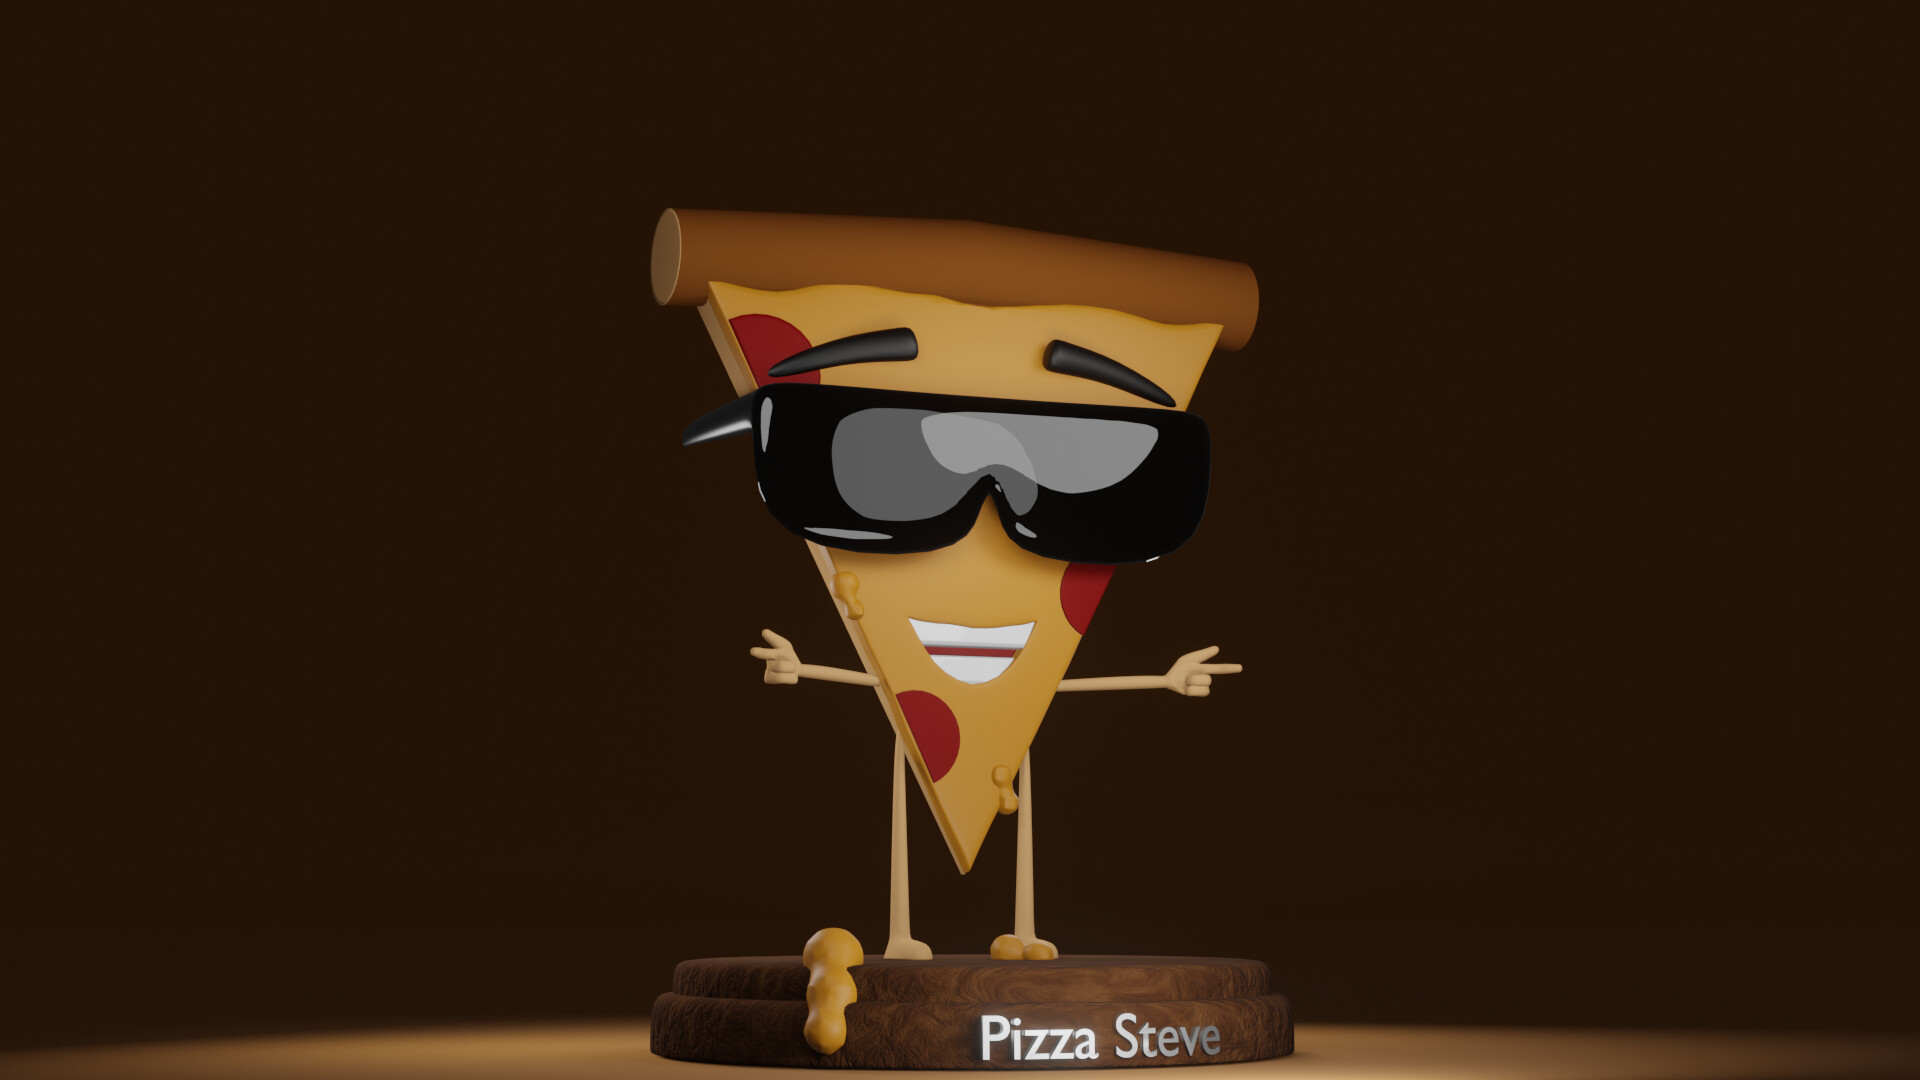 ArtStation - Pizza Steve